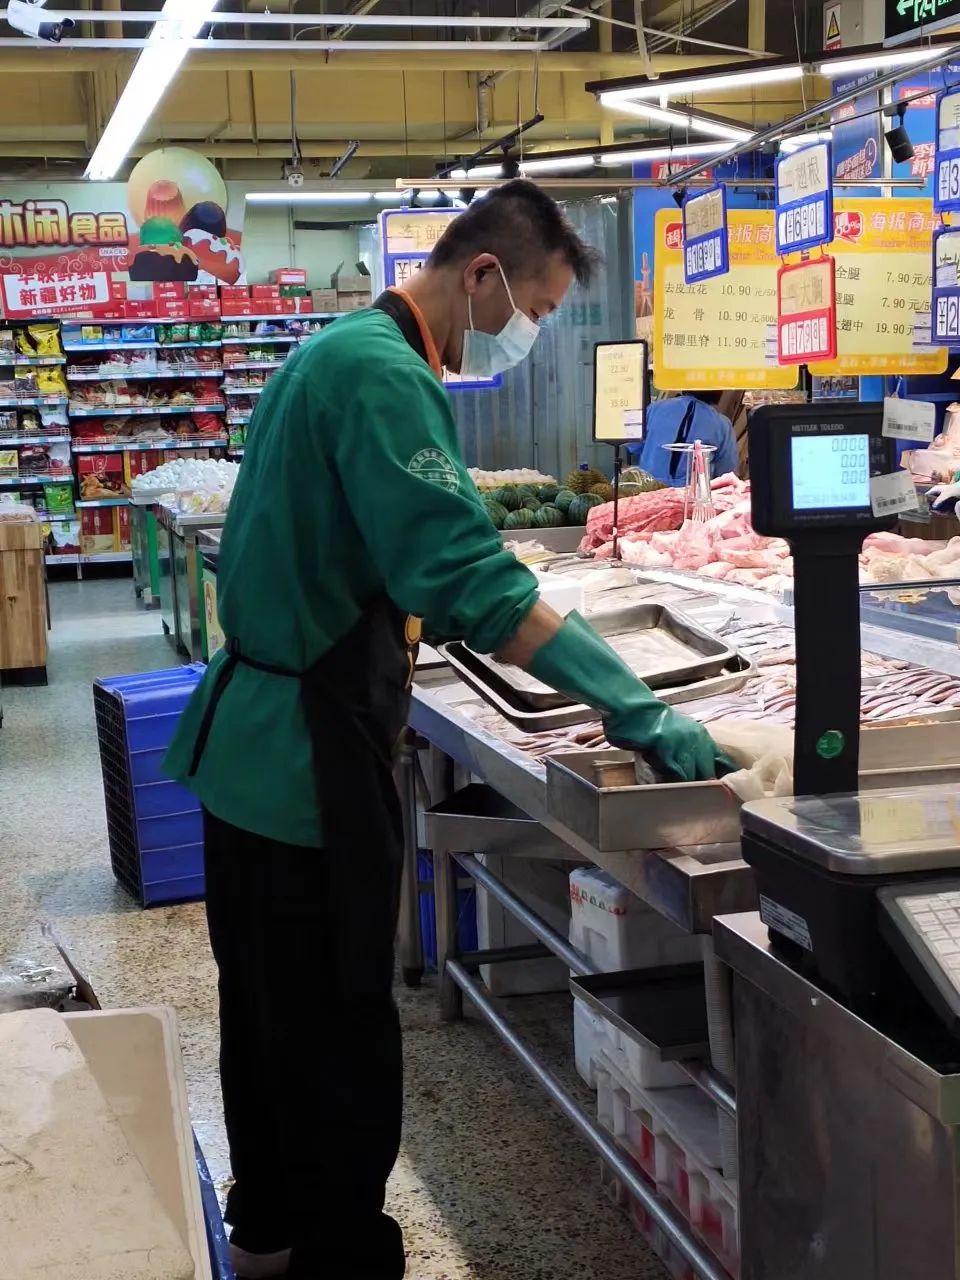 防疫情、稳市场、保民生——济南华联超市济钢店疫情保供纪实